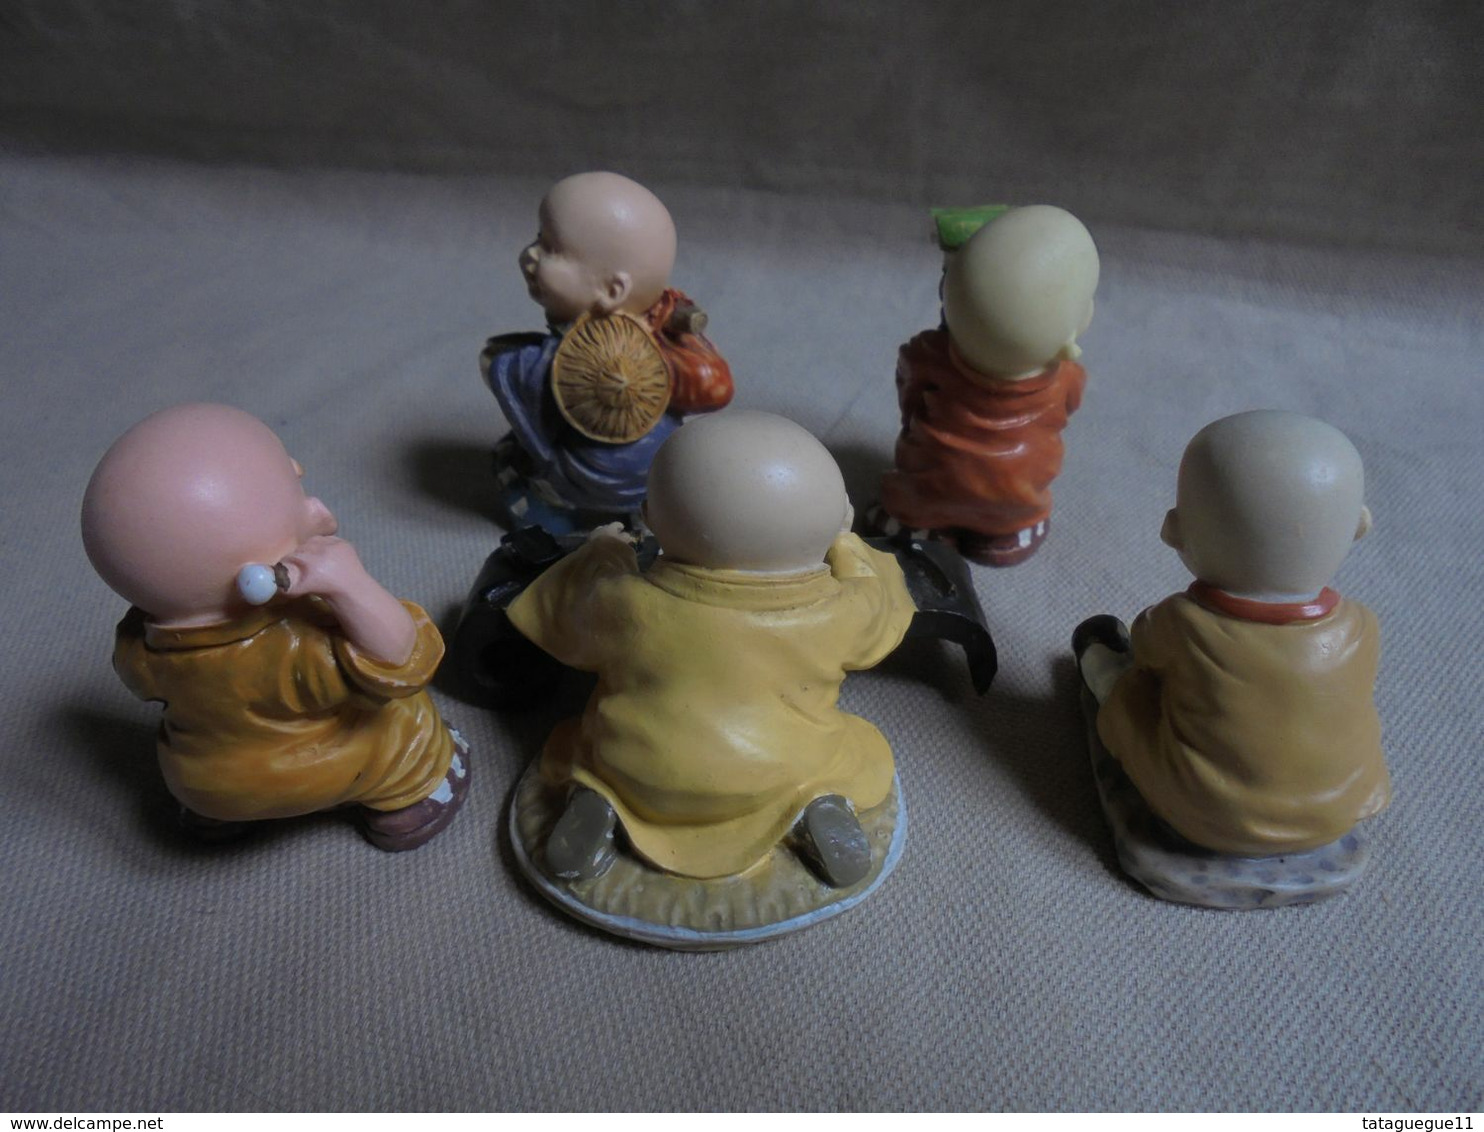 Petit lot de 5 figurines en résine "Petits personnages garçons japonais"